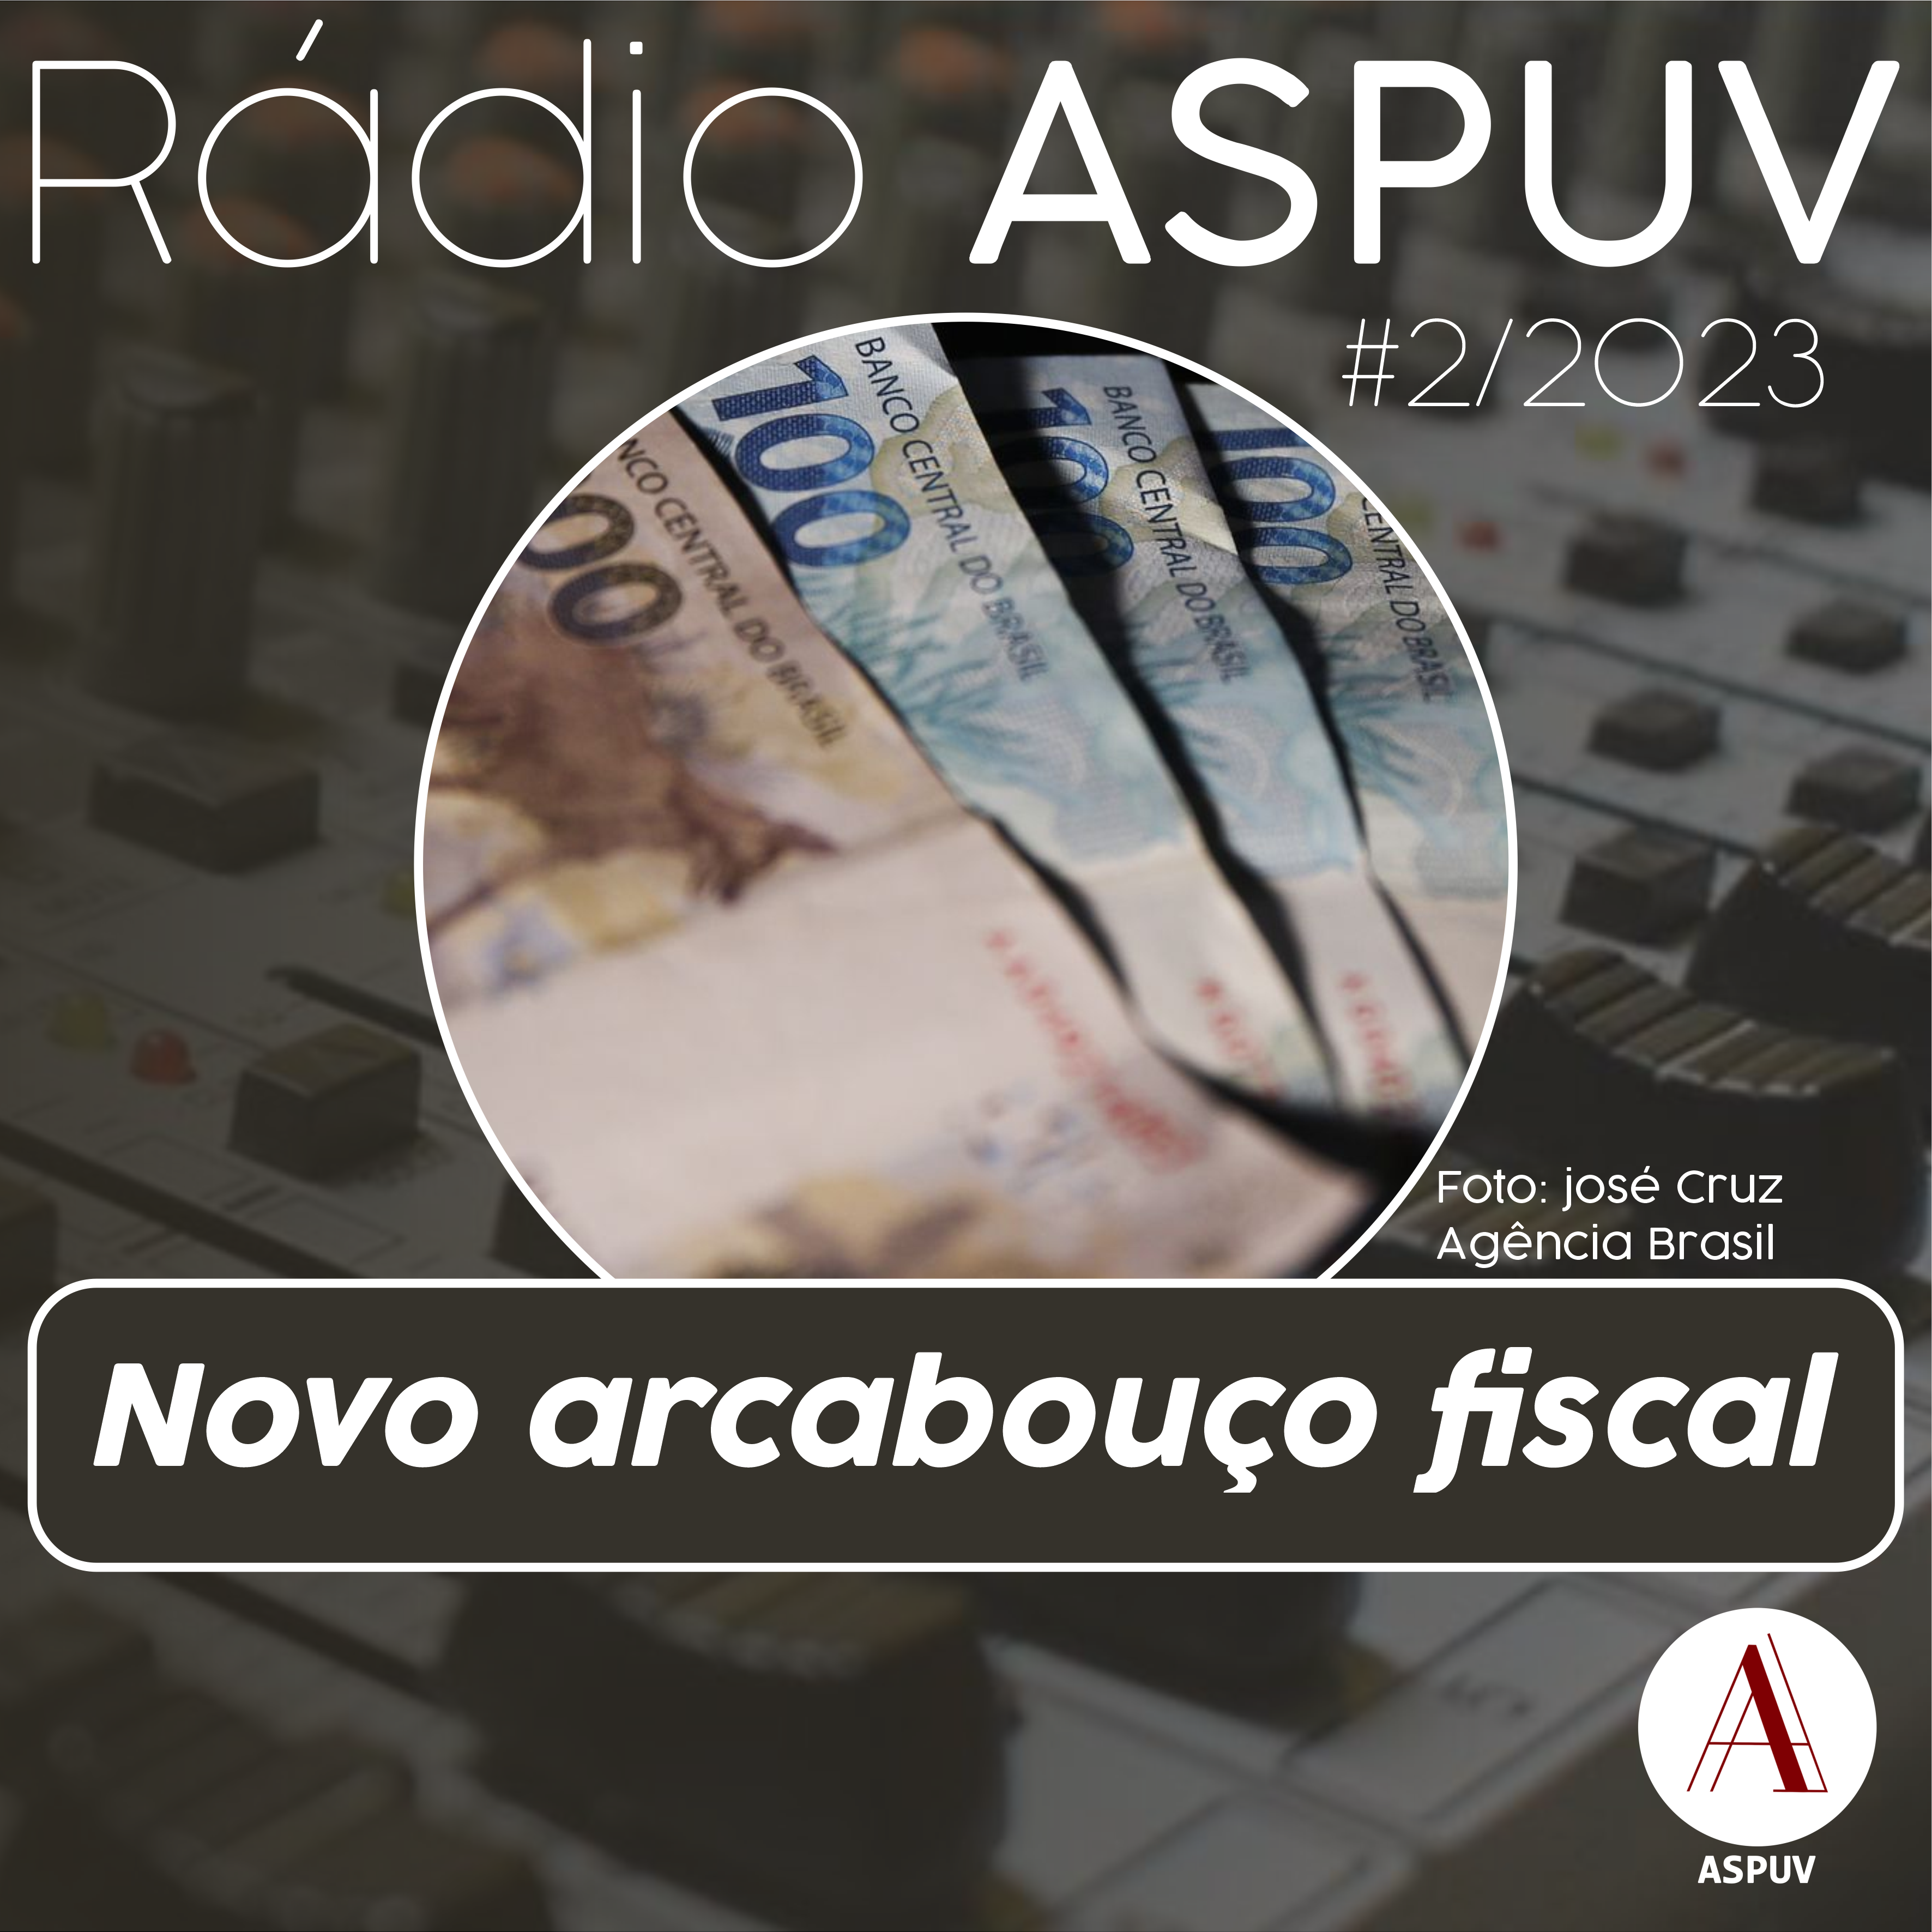 Rádio ASPUV #2/2023 – Novo arcabouço fiscal